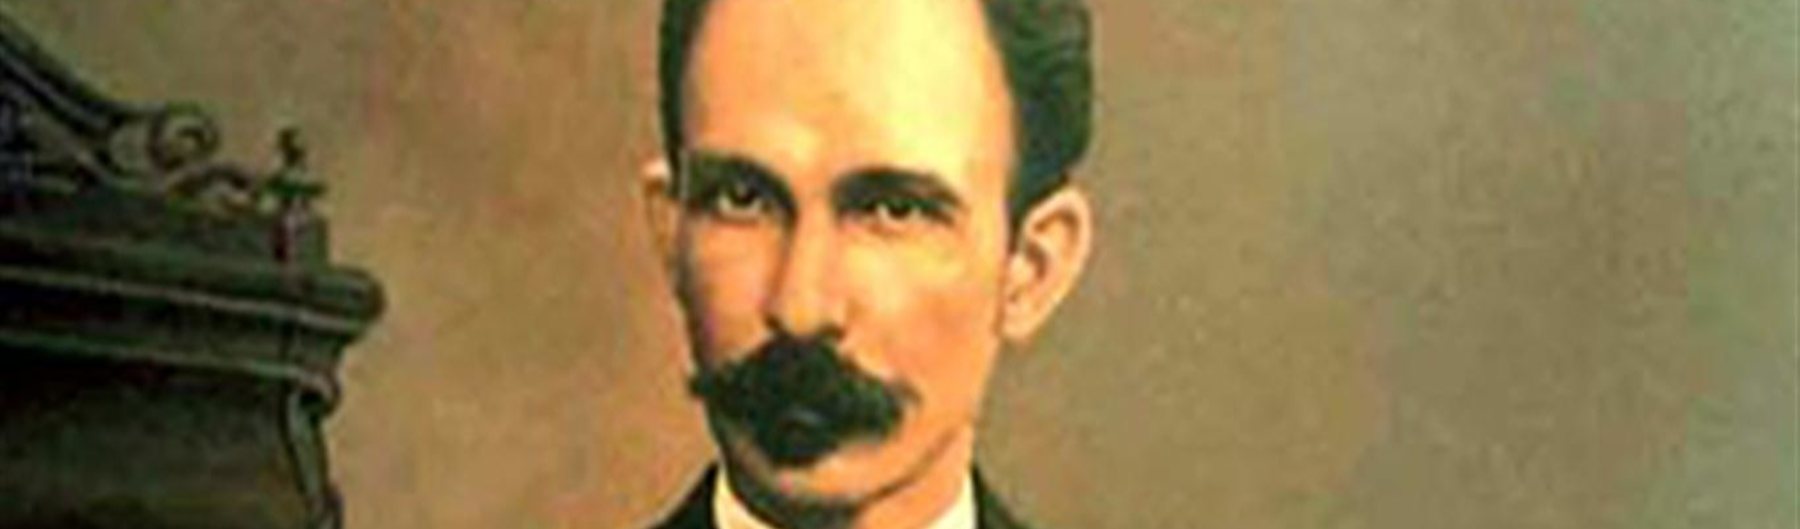 José Martí, 171 anos: Apóstolo da Independência de Cuba e de Nossa América